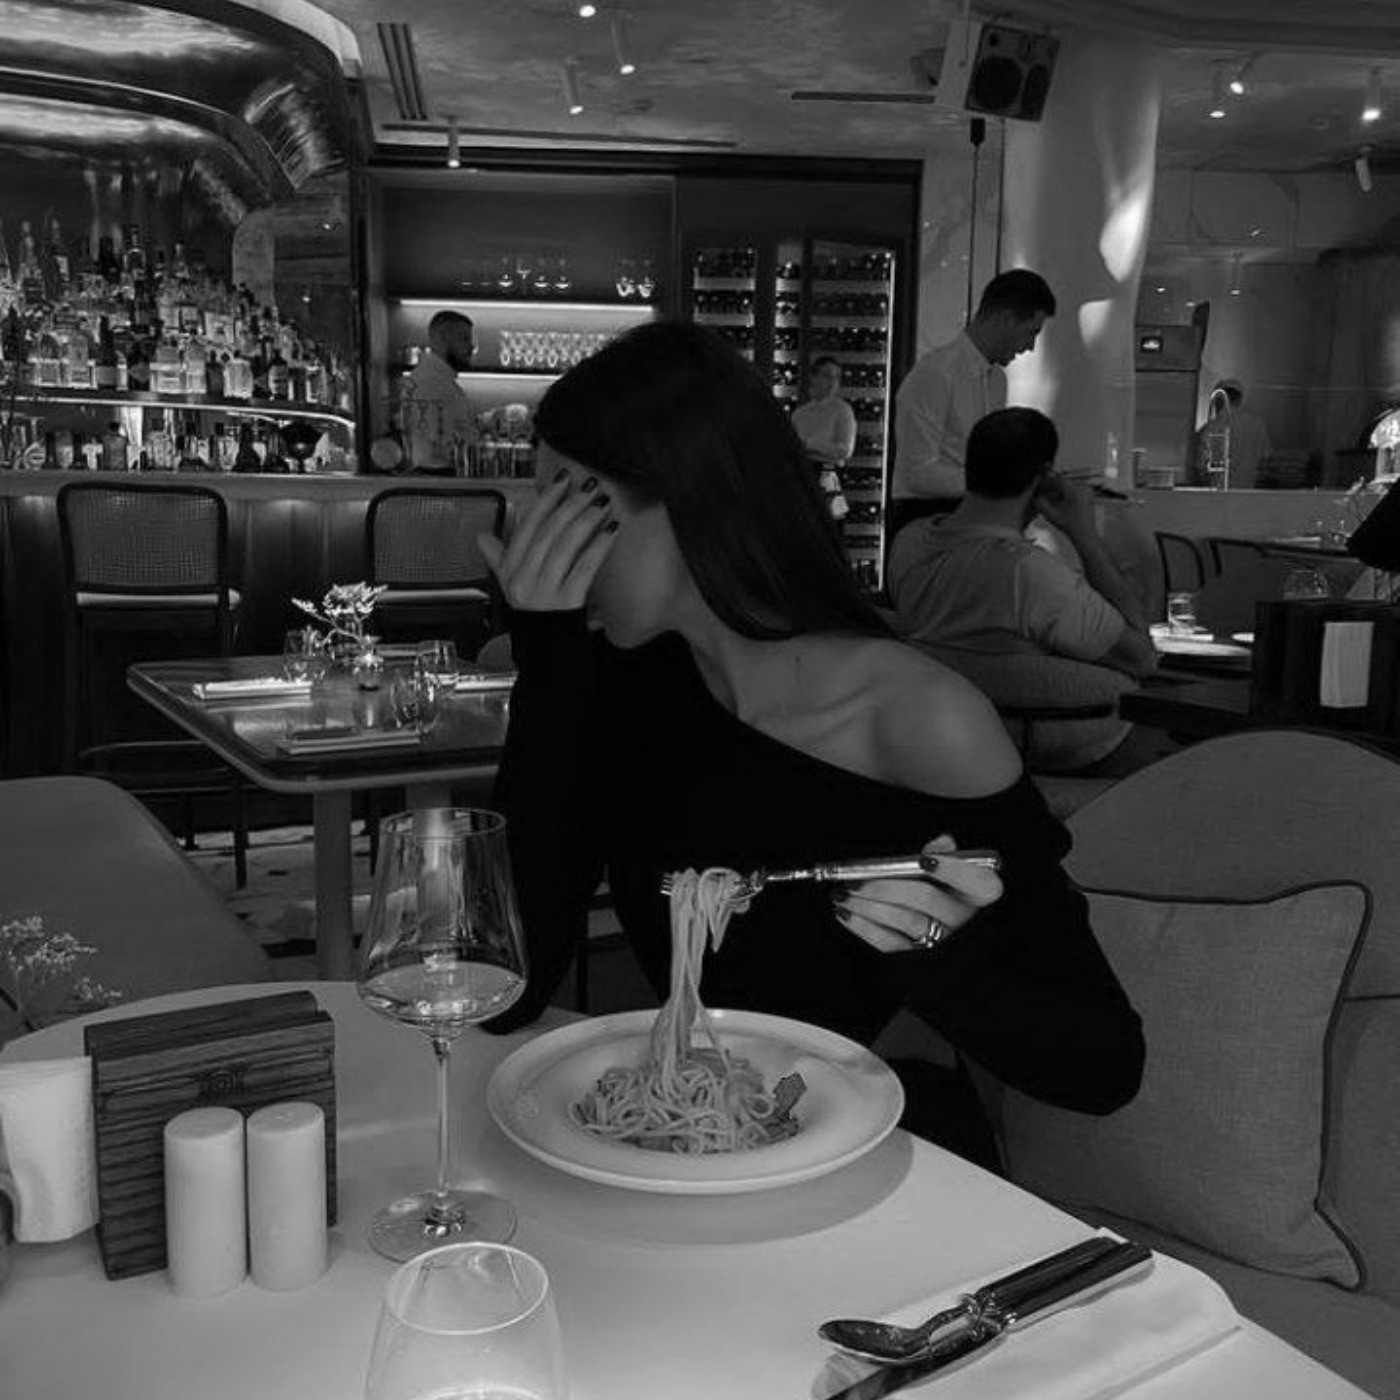 عکس غذا خوردن دختر توی رستوران دارک